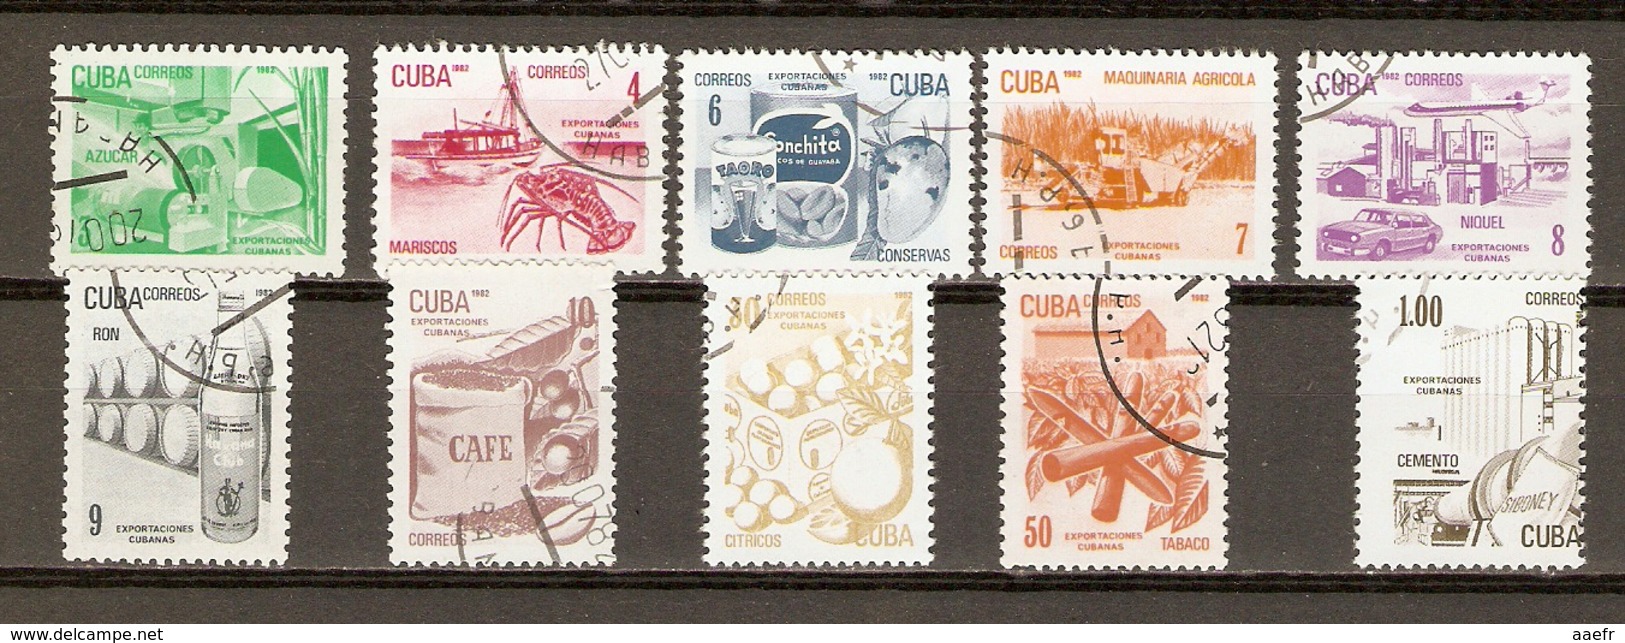 Cuba 1982 - Exports - Série Complète - 2484/93 - Crustacés - Rhum - Café - Nickel - Tabac - Agrumes - Matériel Agricole - Used Stamps